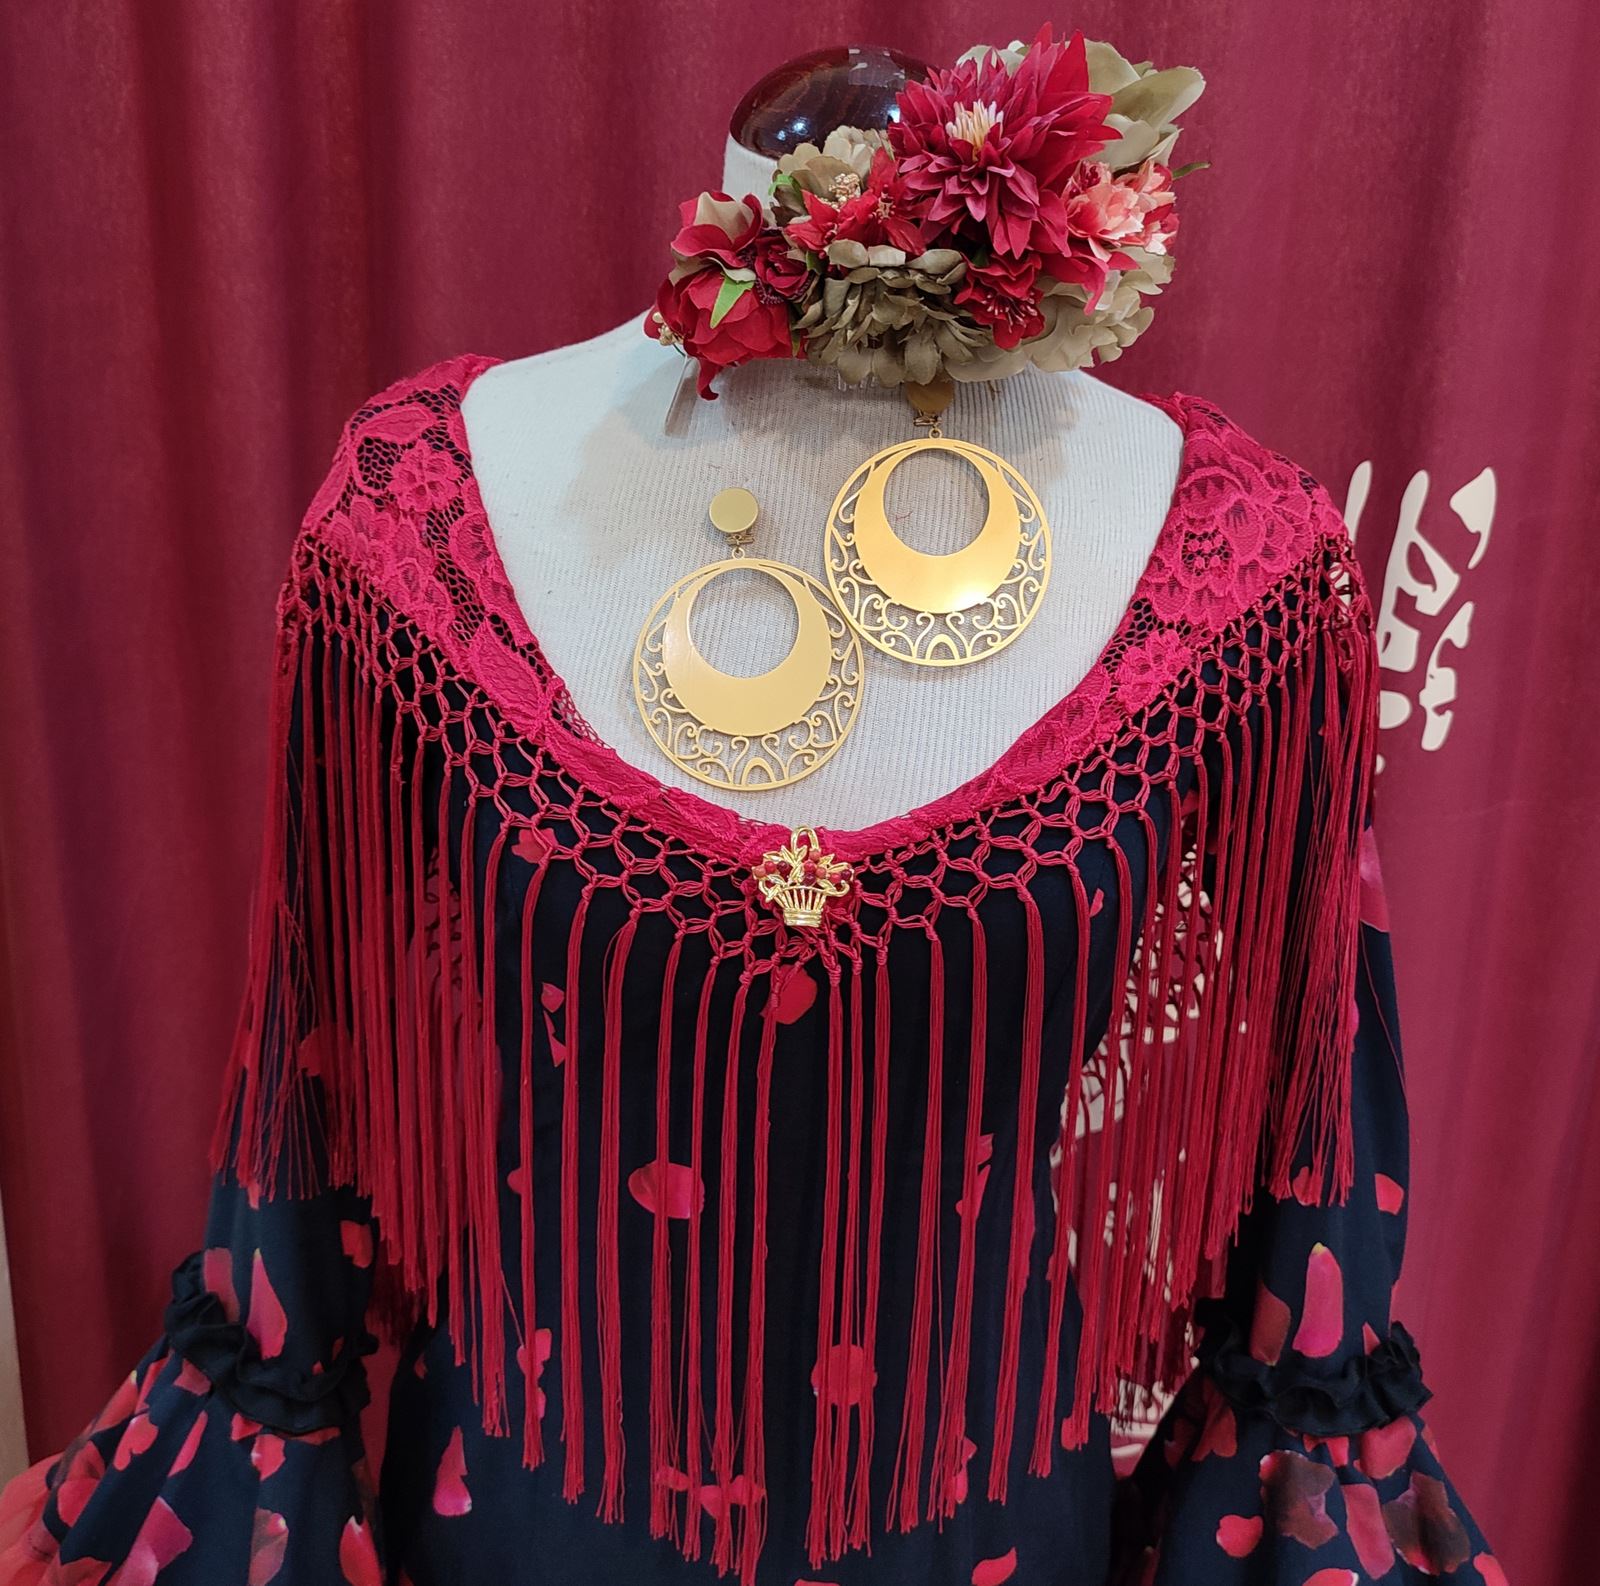 Vestido de gitana de encaje rojo de Guadalupe Moda Flamenca